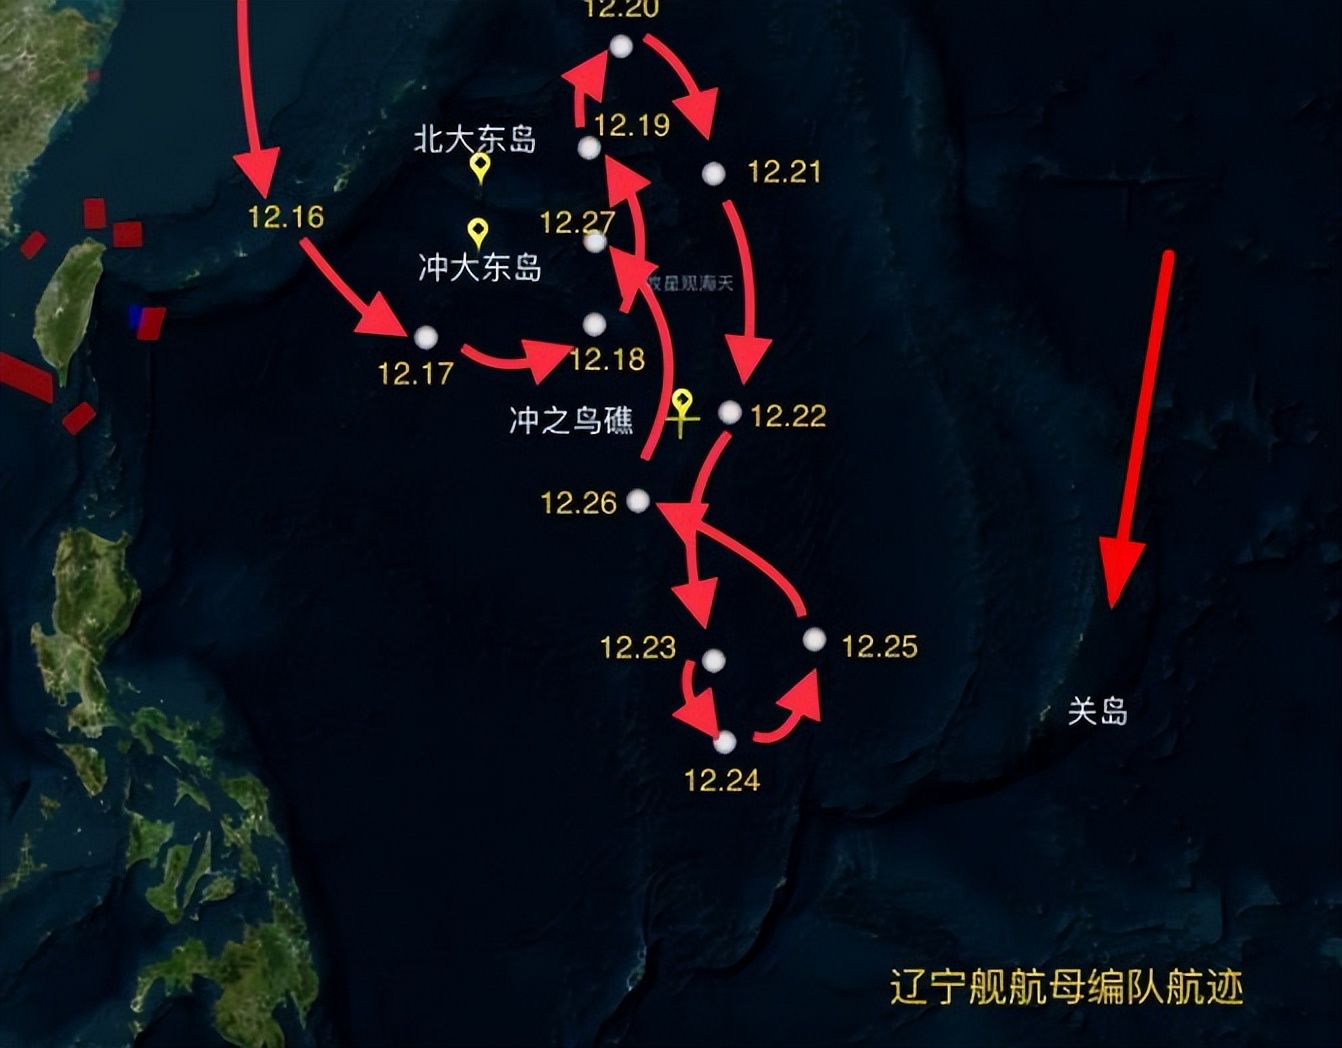 中国航母编队罕见接近关岛，美国放话：攻击关岛等同攻击美国